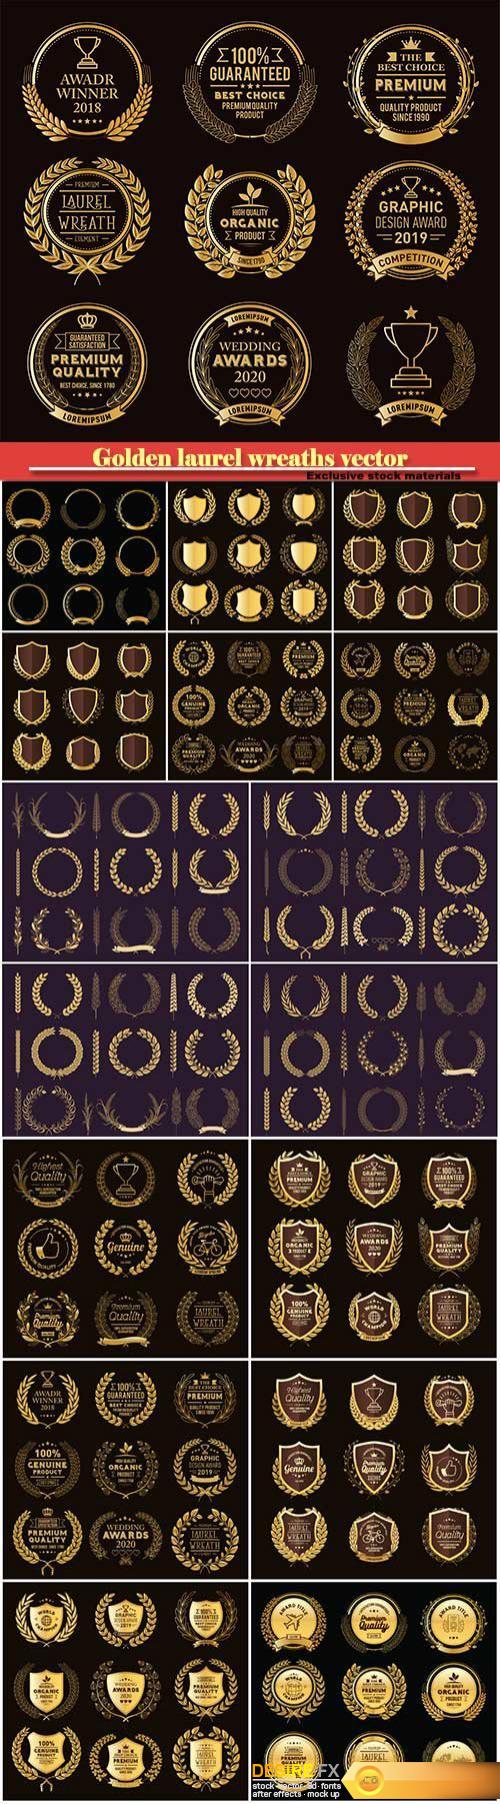 Golden laurel wreaths vector, emblems, logos